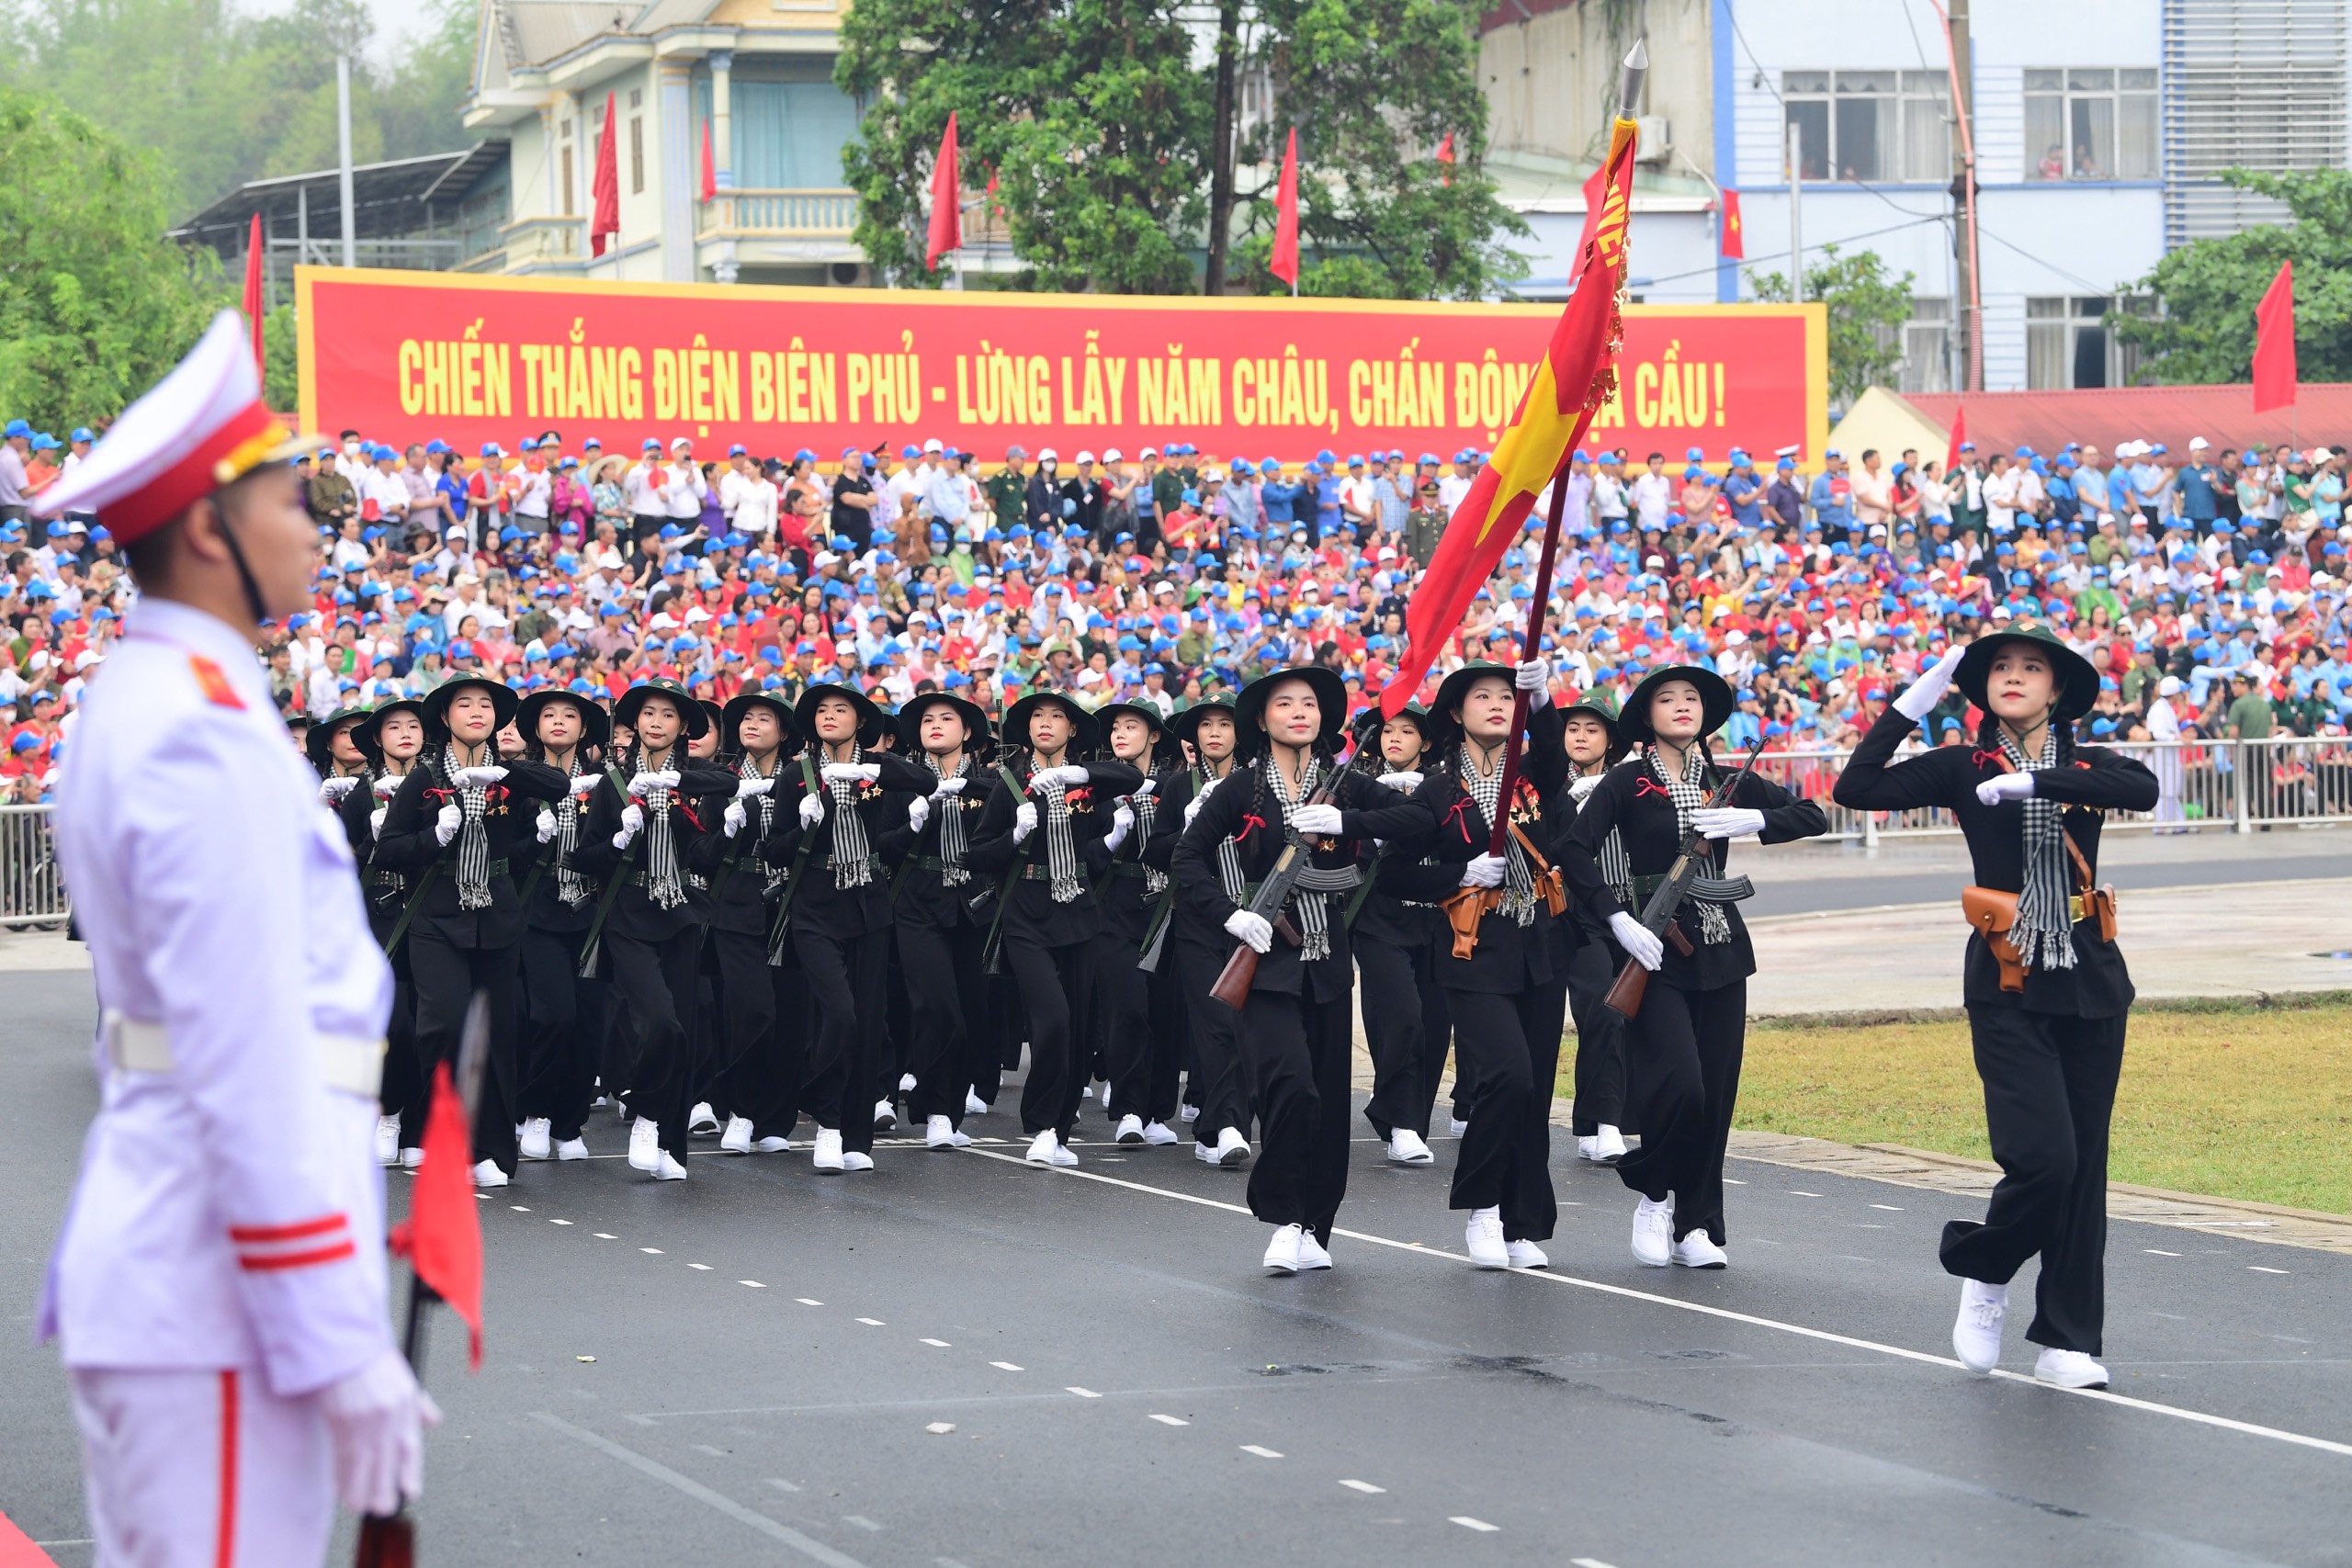 Lễ diễu binh oai hùng và đầy tự hào của 12.000 người - những hình ảnh đi vào lịch sử ở Điện Biên Phủ- Ảnh 9.